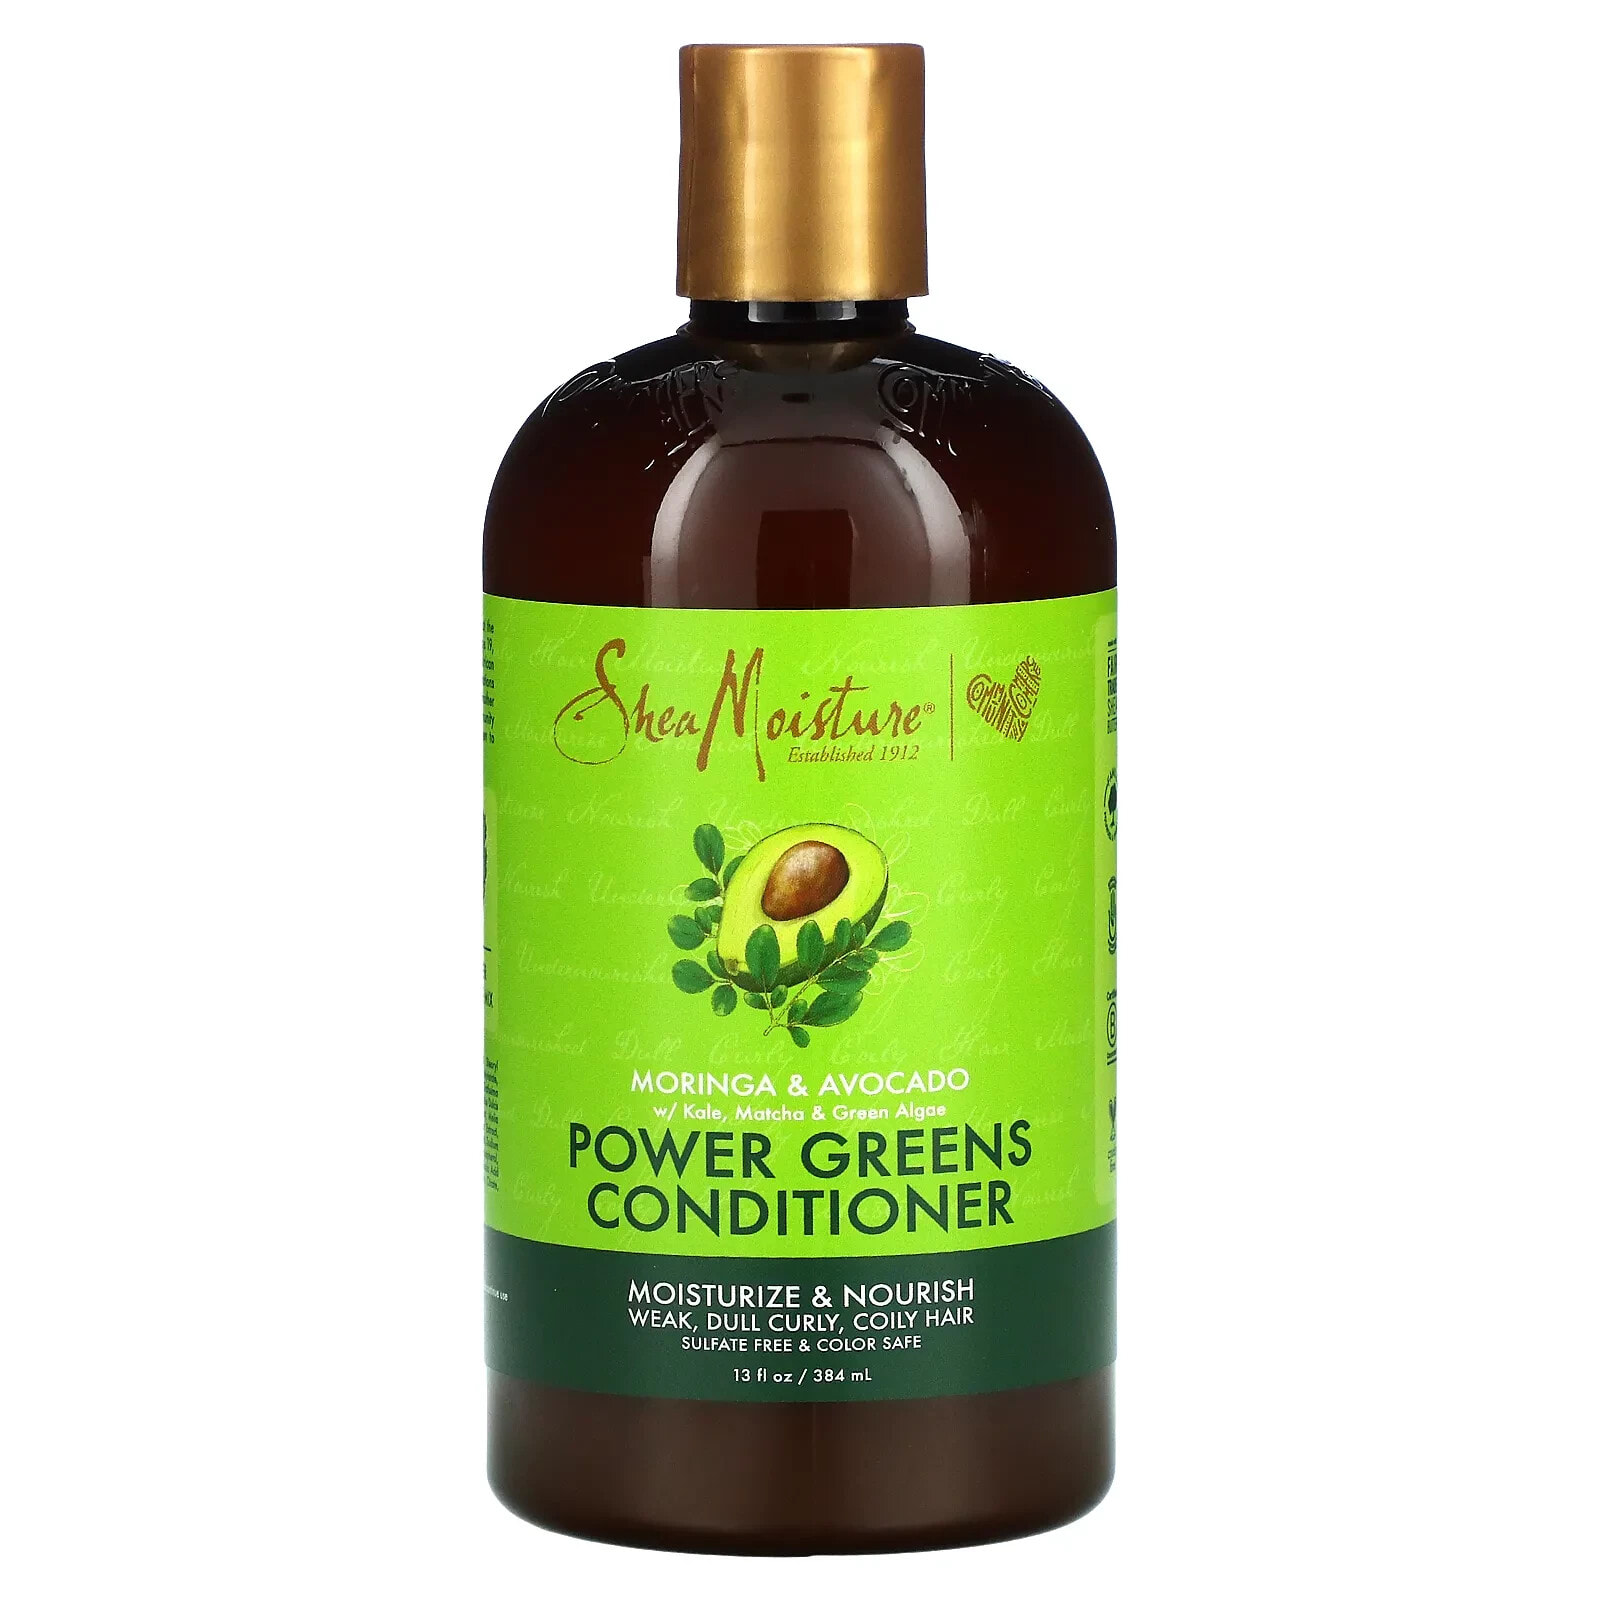 SheaMoisture, Power Greens Conditioner, Moringa & Avocado, 13 fl oz (384 ml)